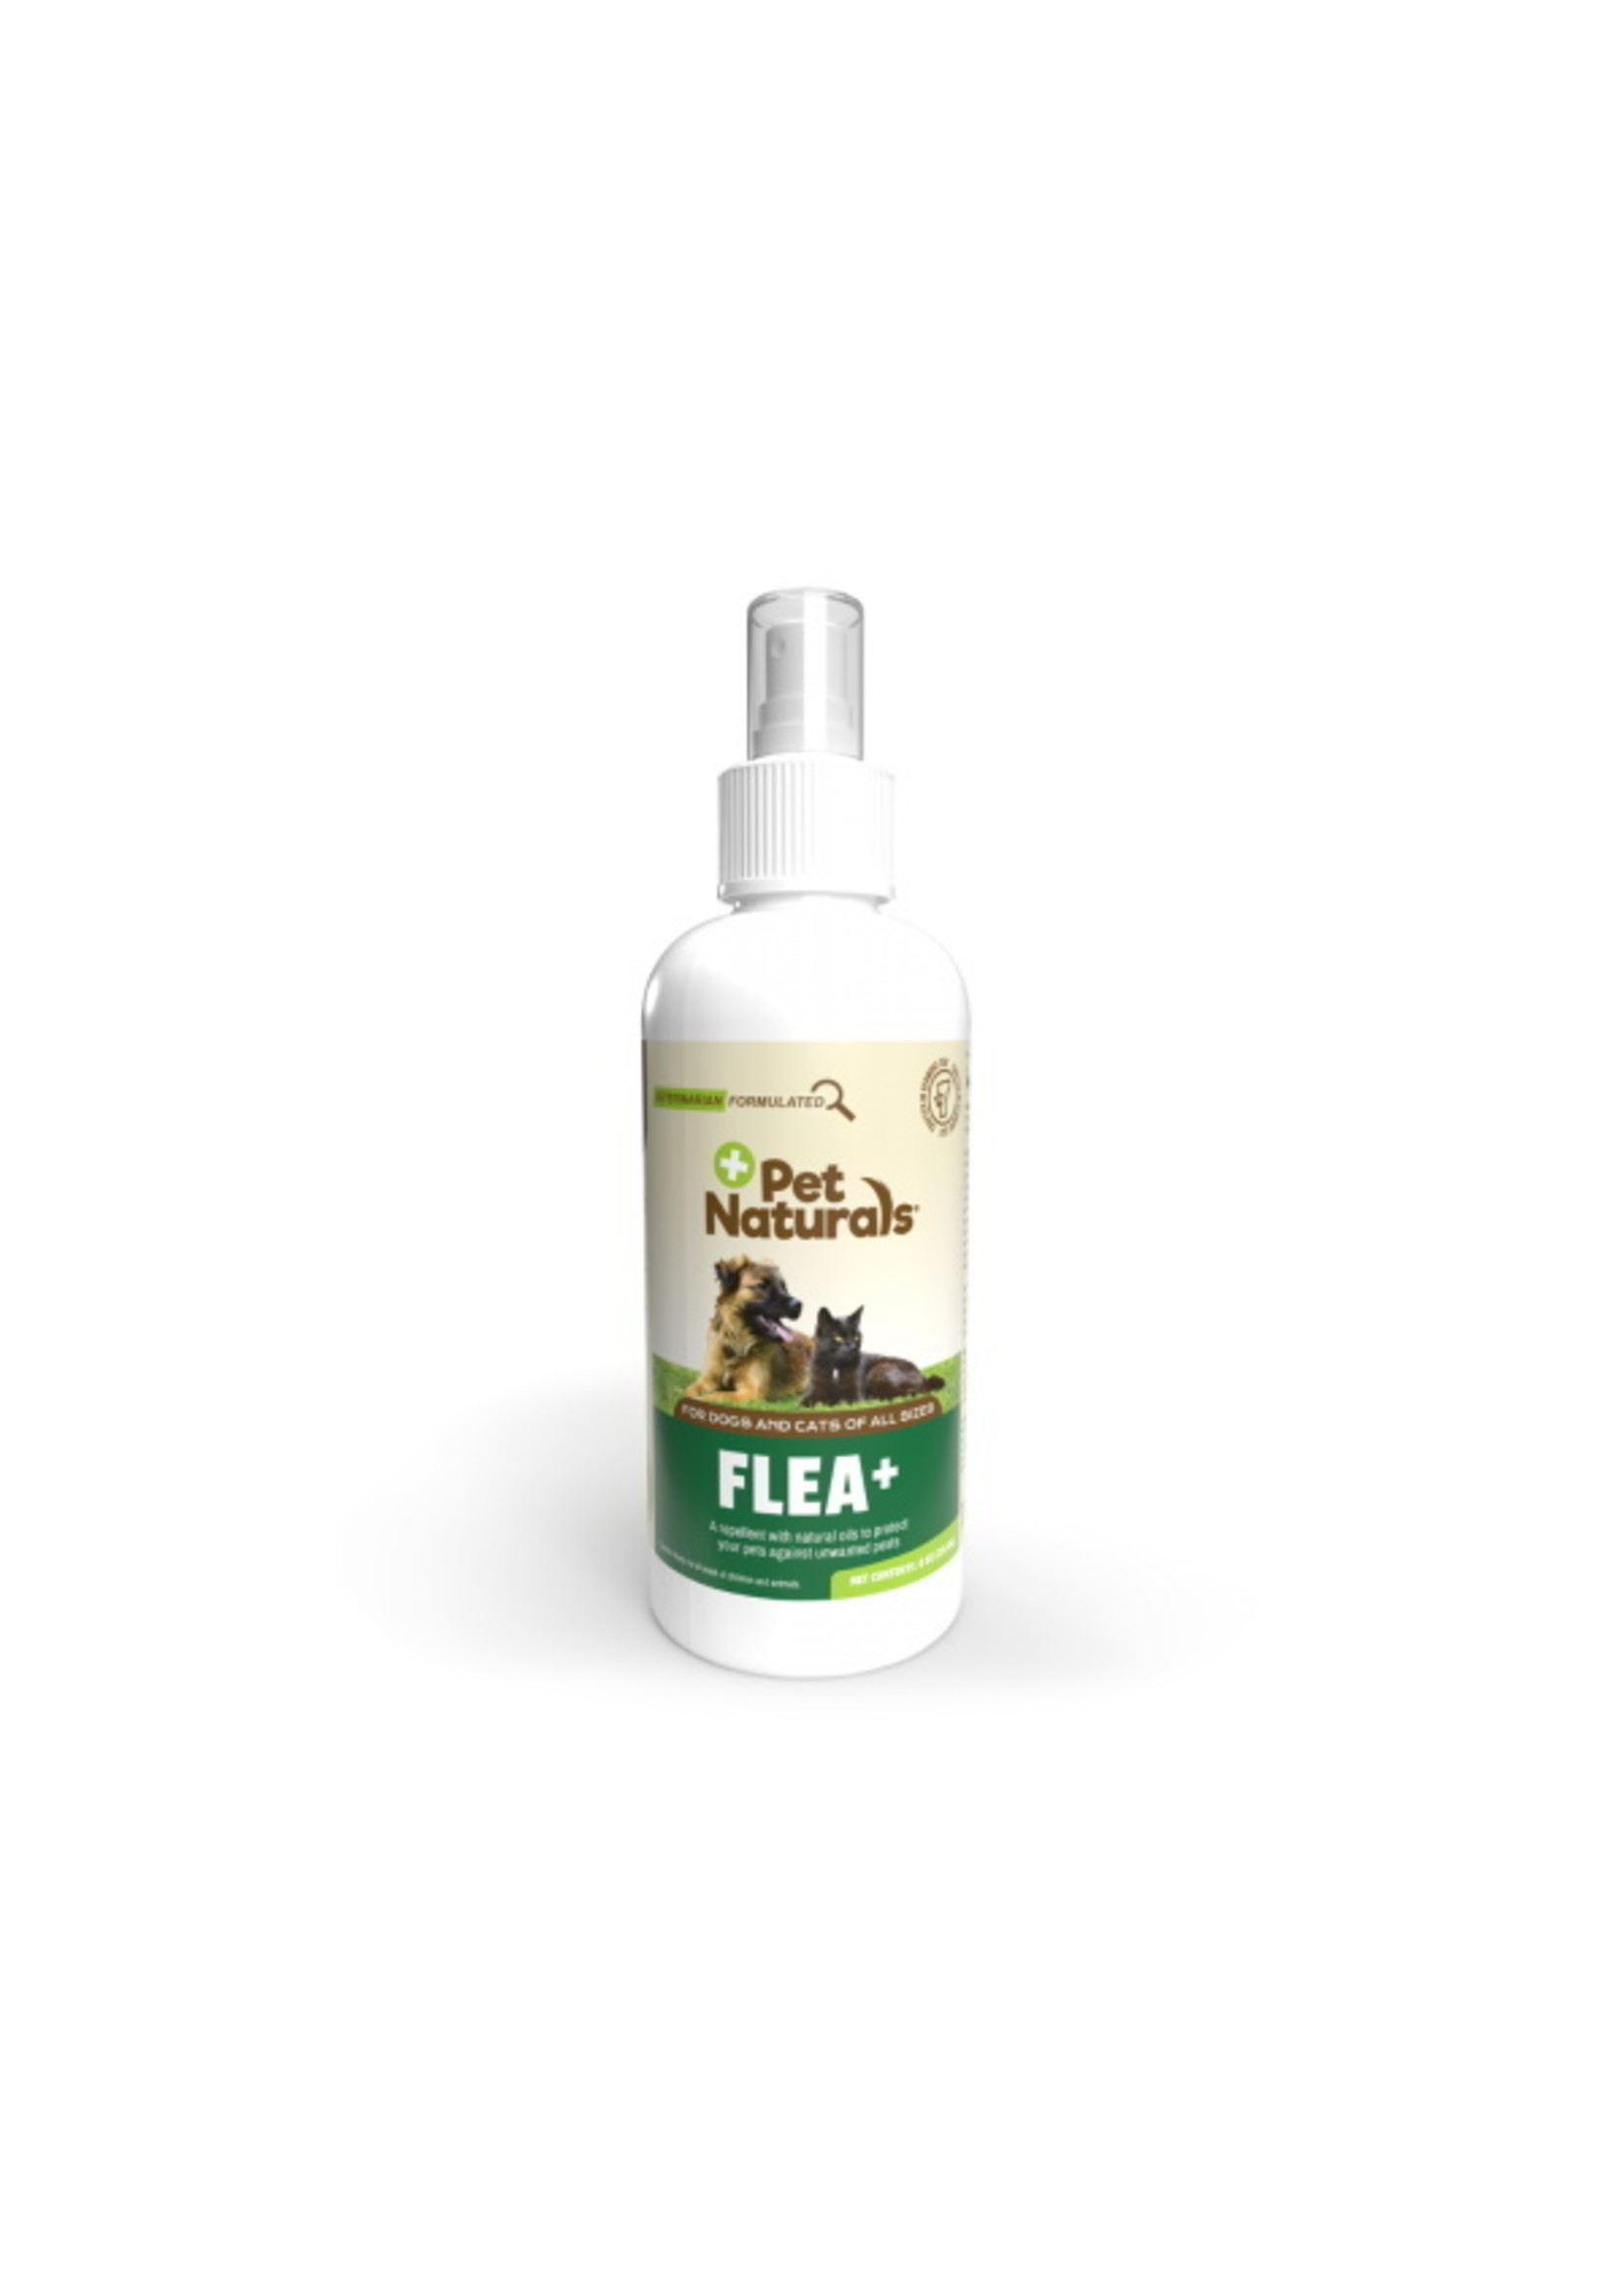 Pet Naturals Flea+ Spray 8oz